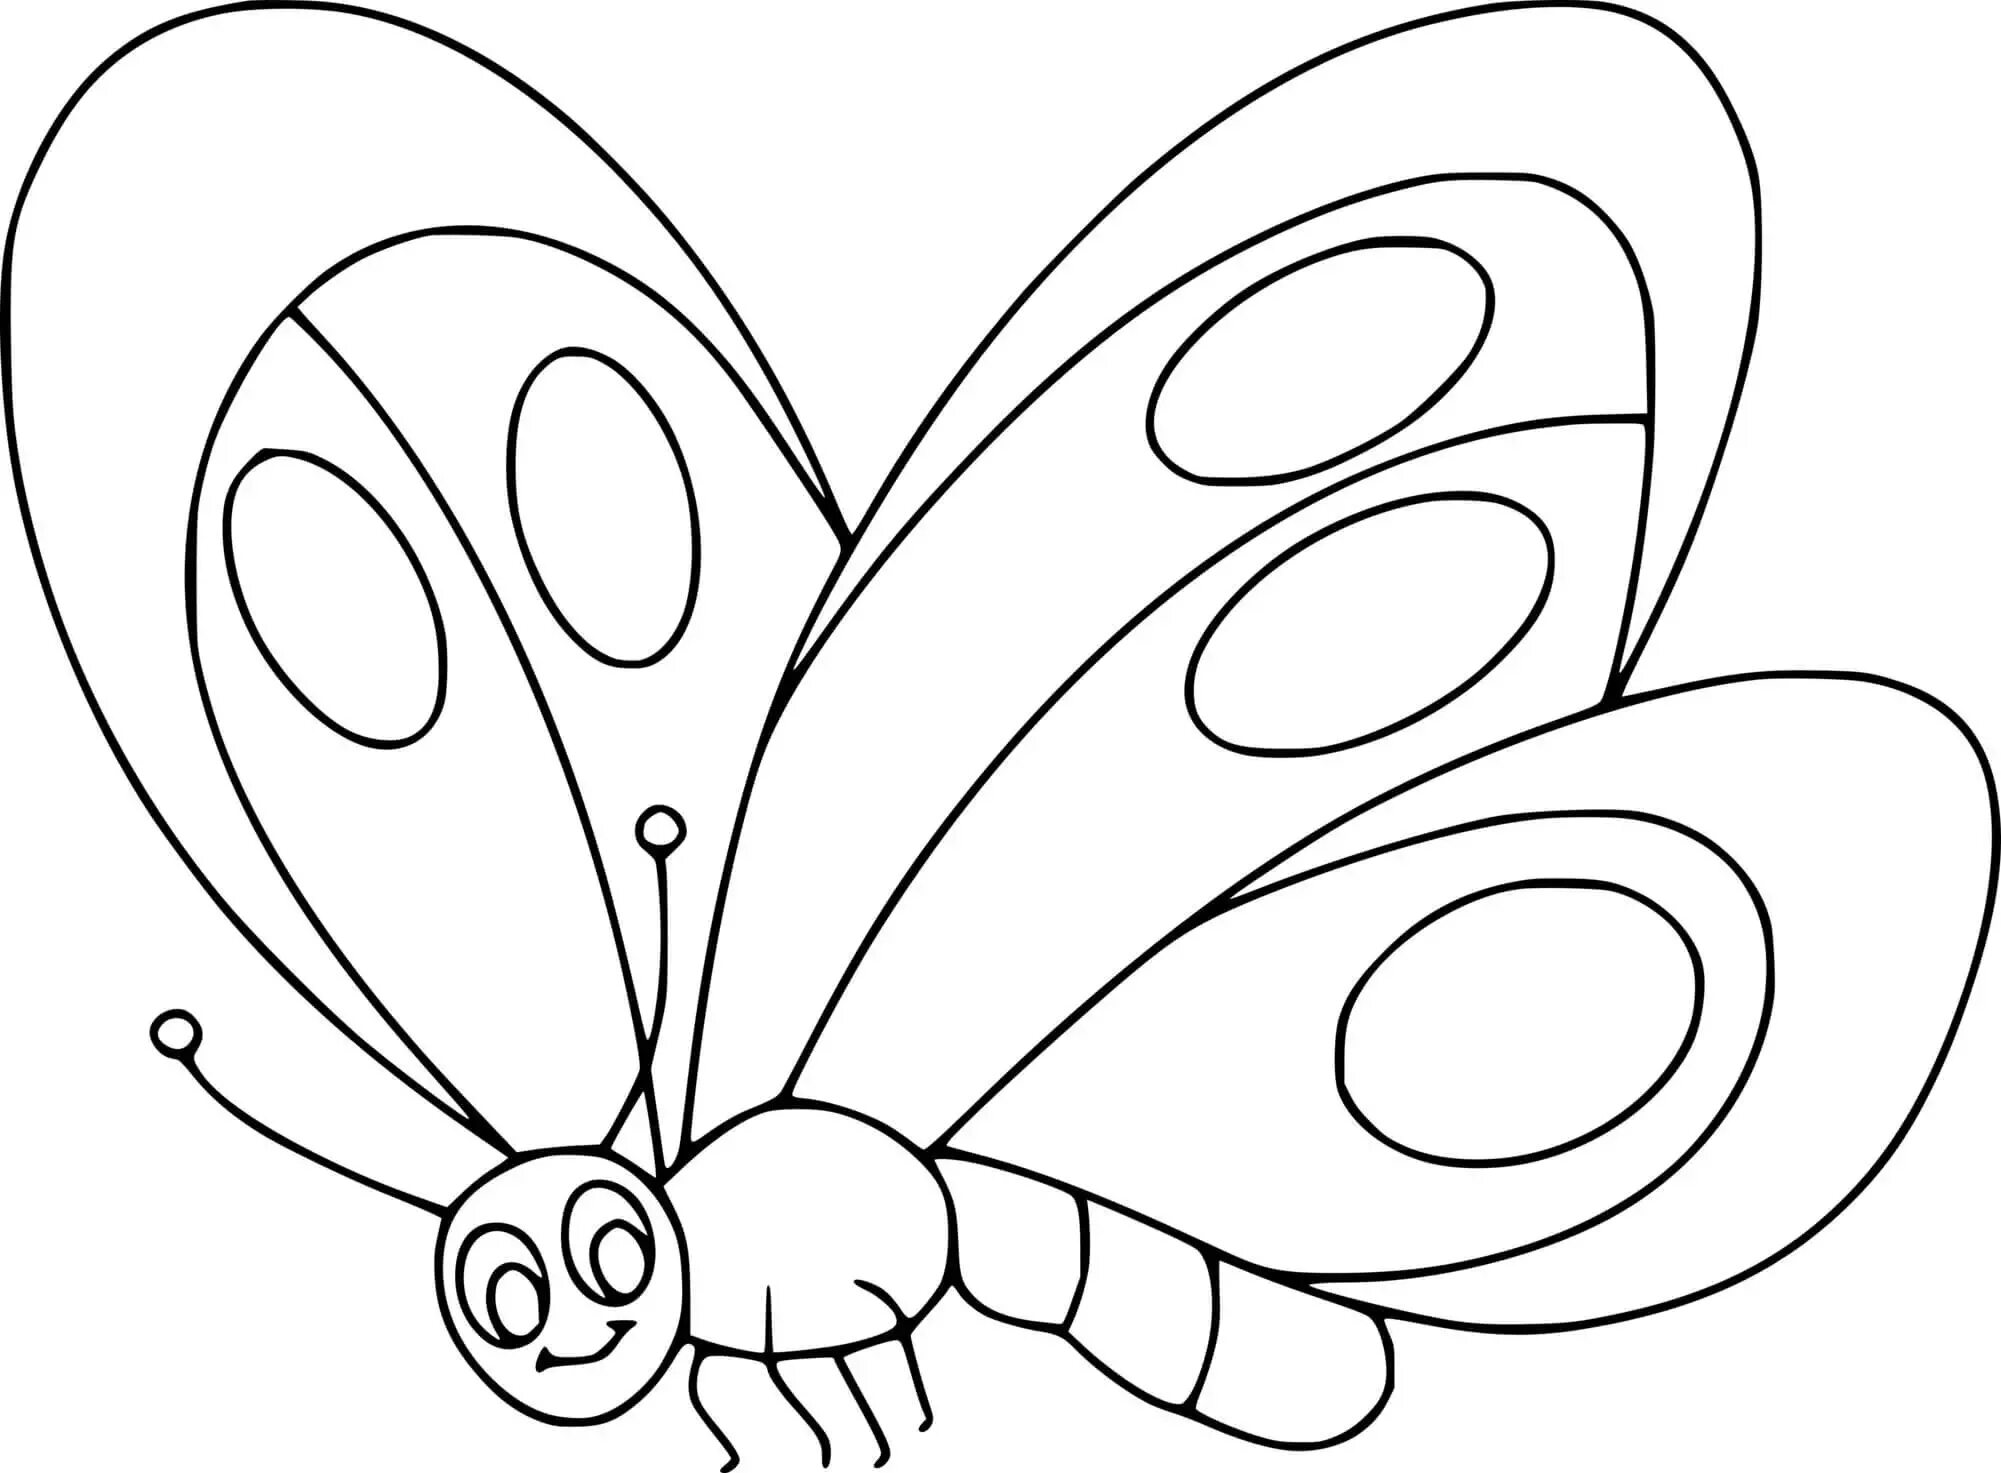 Бабочка раскраска для детей. Рисунок бабочки для раскрашивания. Бабочка раскраска для детей 3-4 лет. Бабочка раскраска для малышей. Бабочки раскраски для детей 5 6 лет